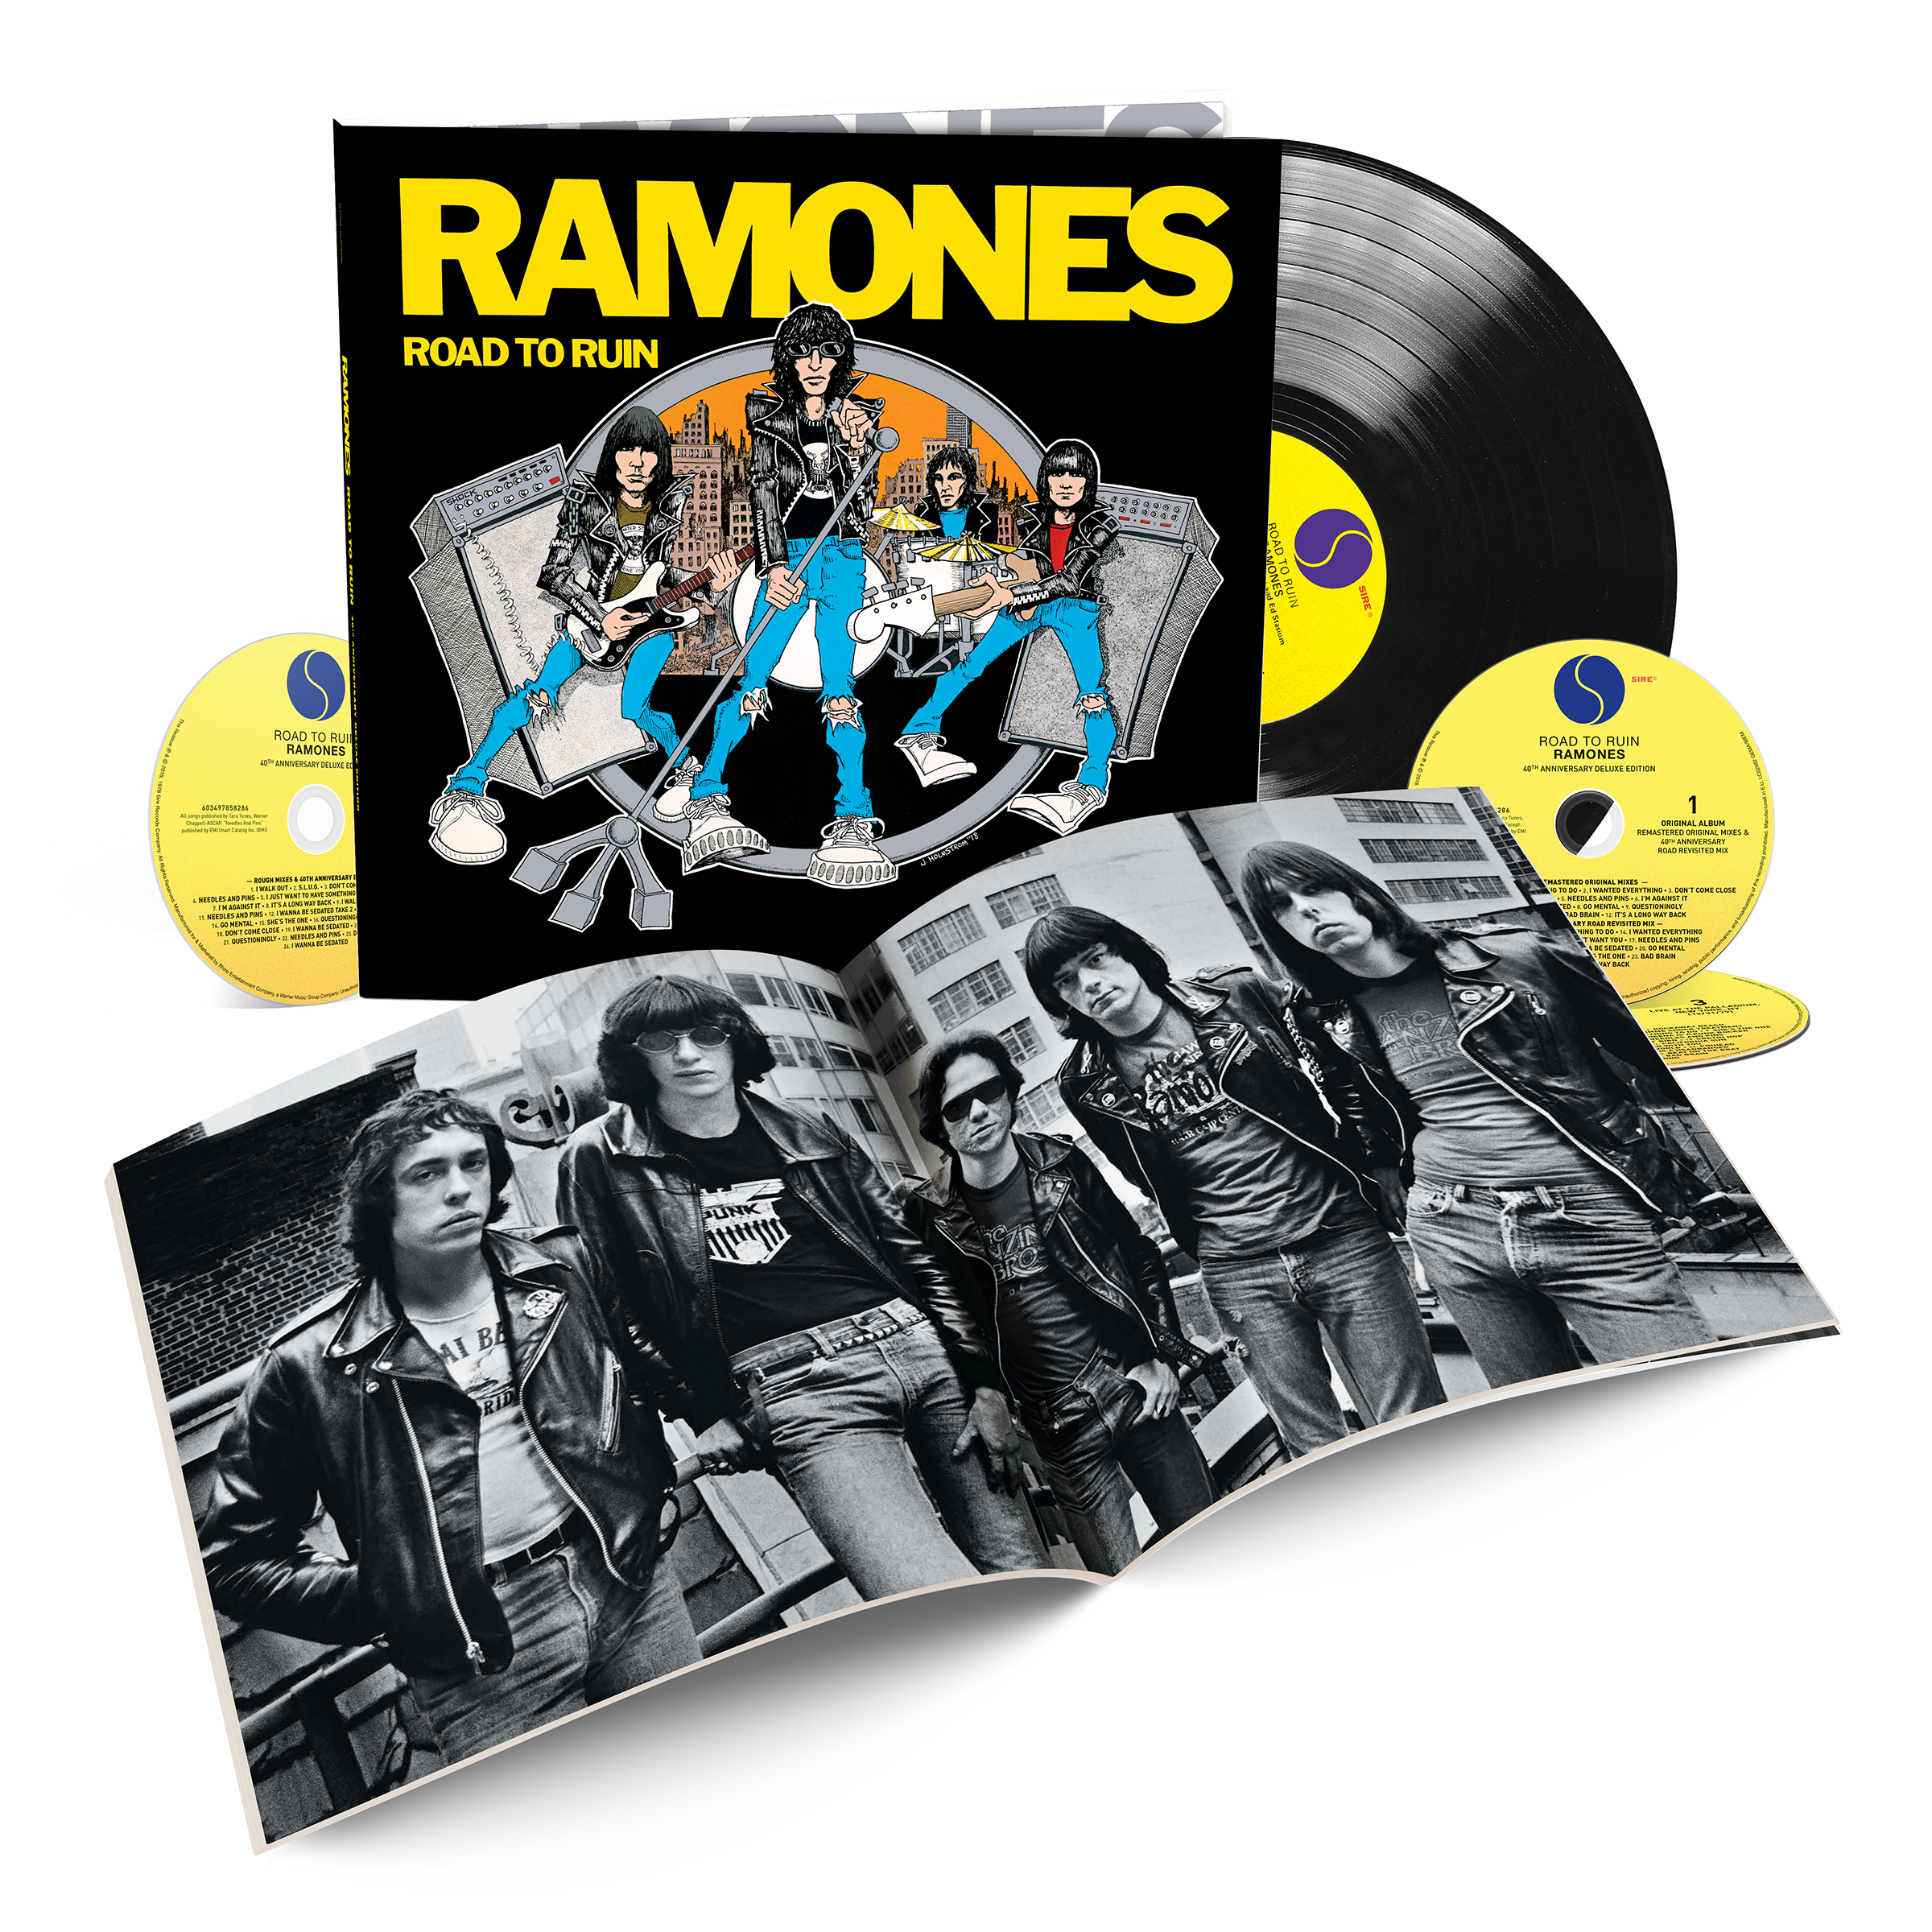 Road to ruin. Ramones "Road to Ruin". Ramones пластинка. Ramones обложки альбомов. Ramones "Road to Ruin (LP)".